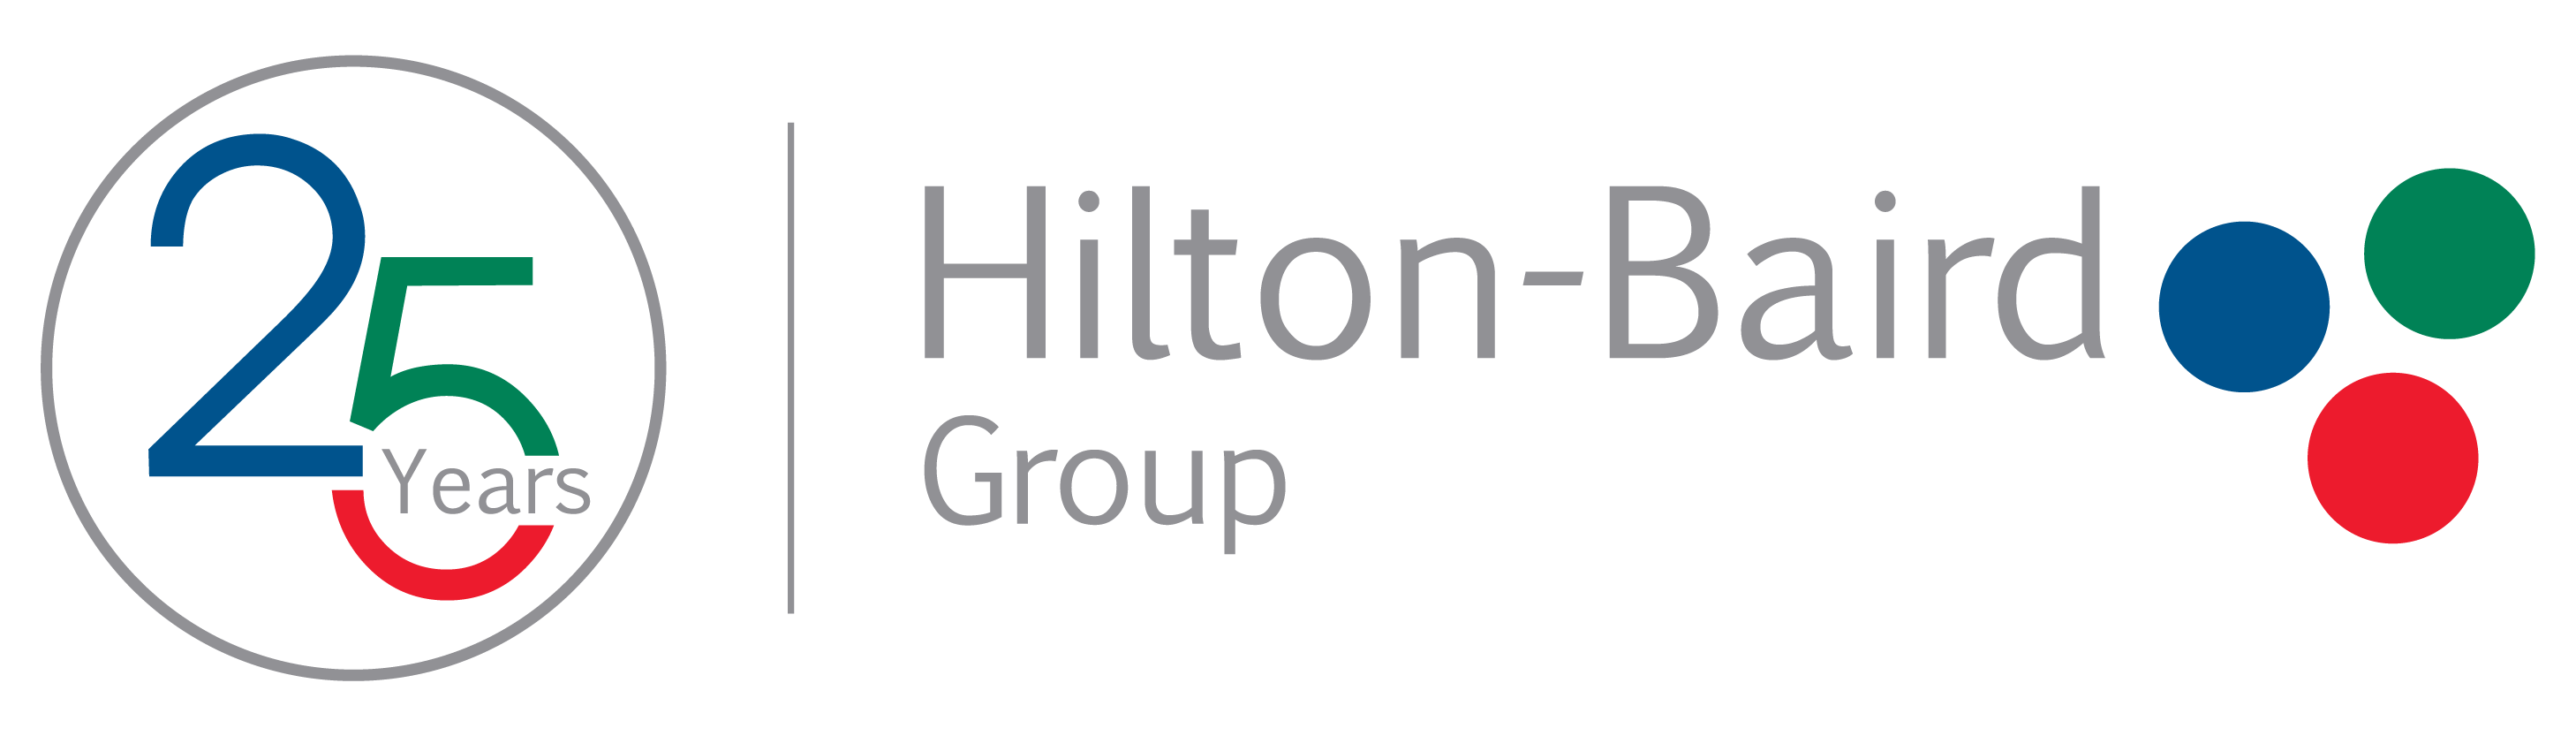 Hilton-Baird Group